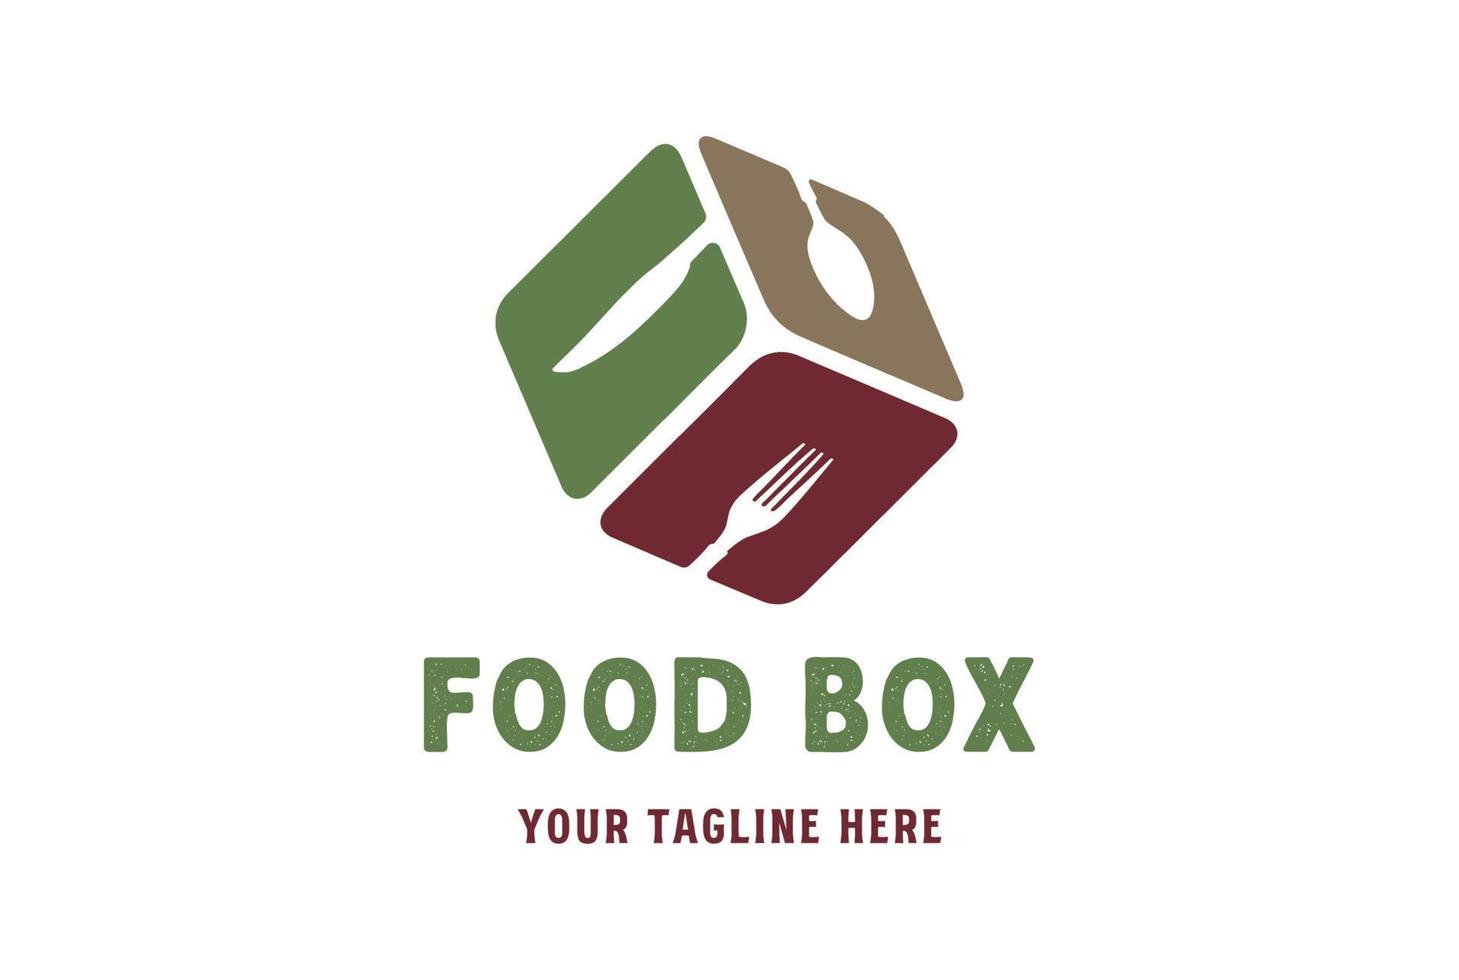 geometrisk kub låda sked gaffel kniv för mat restaurang catering leverans service logotyp design vektor